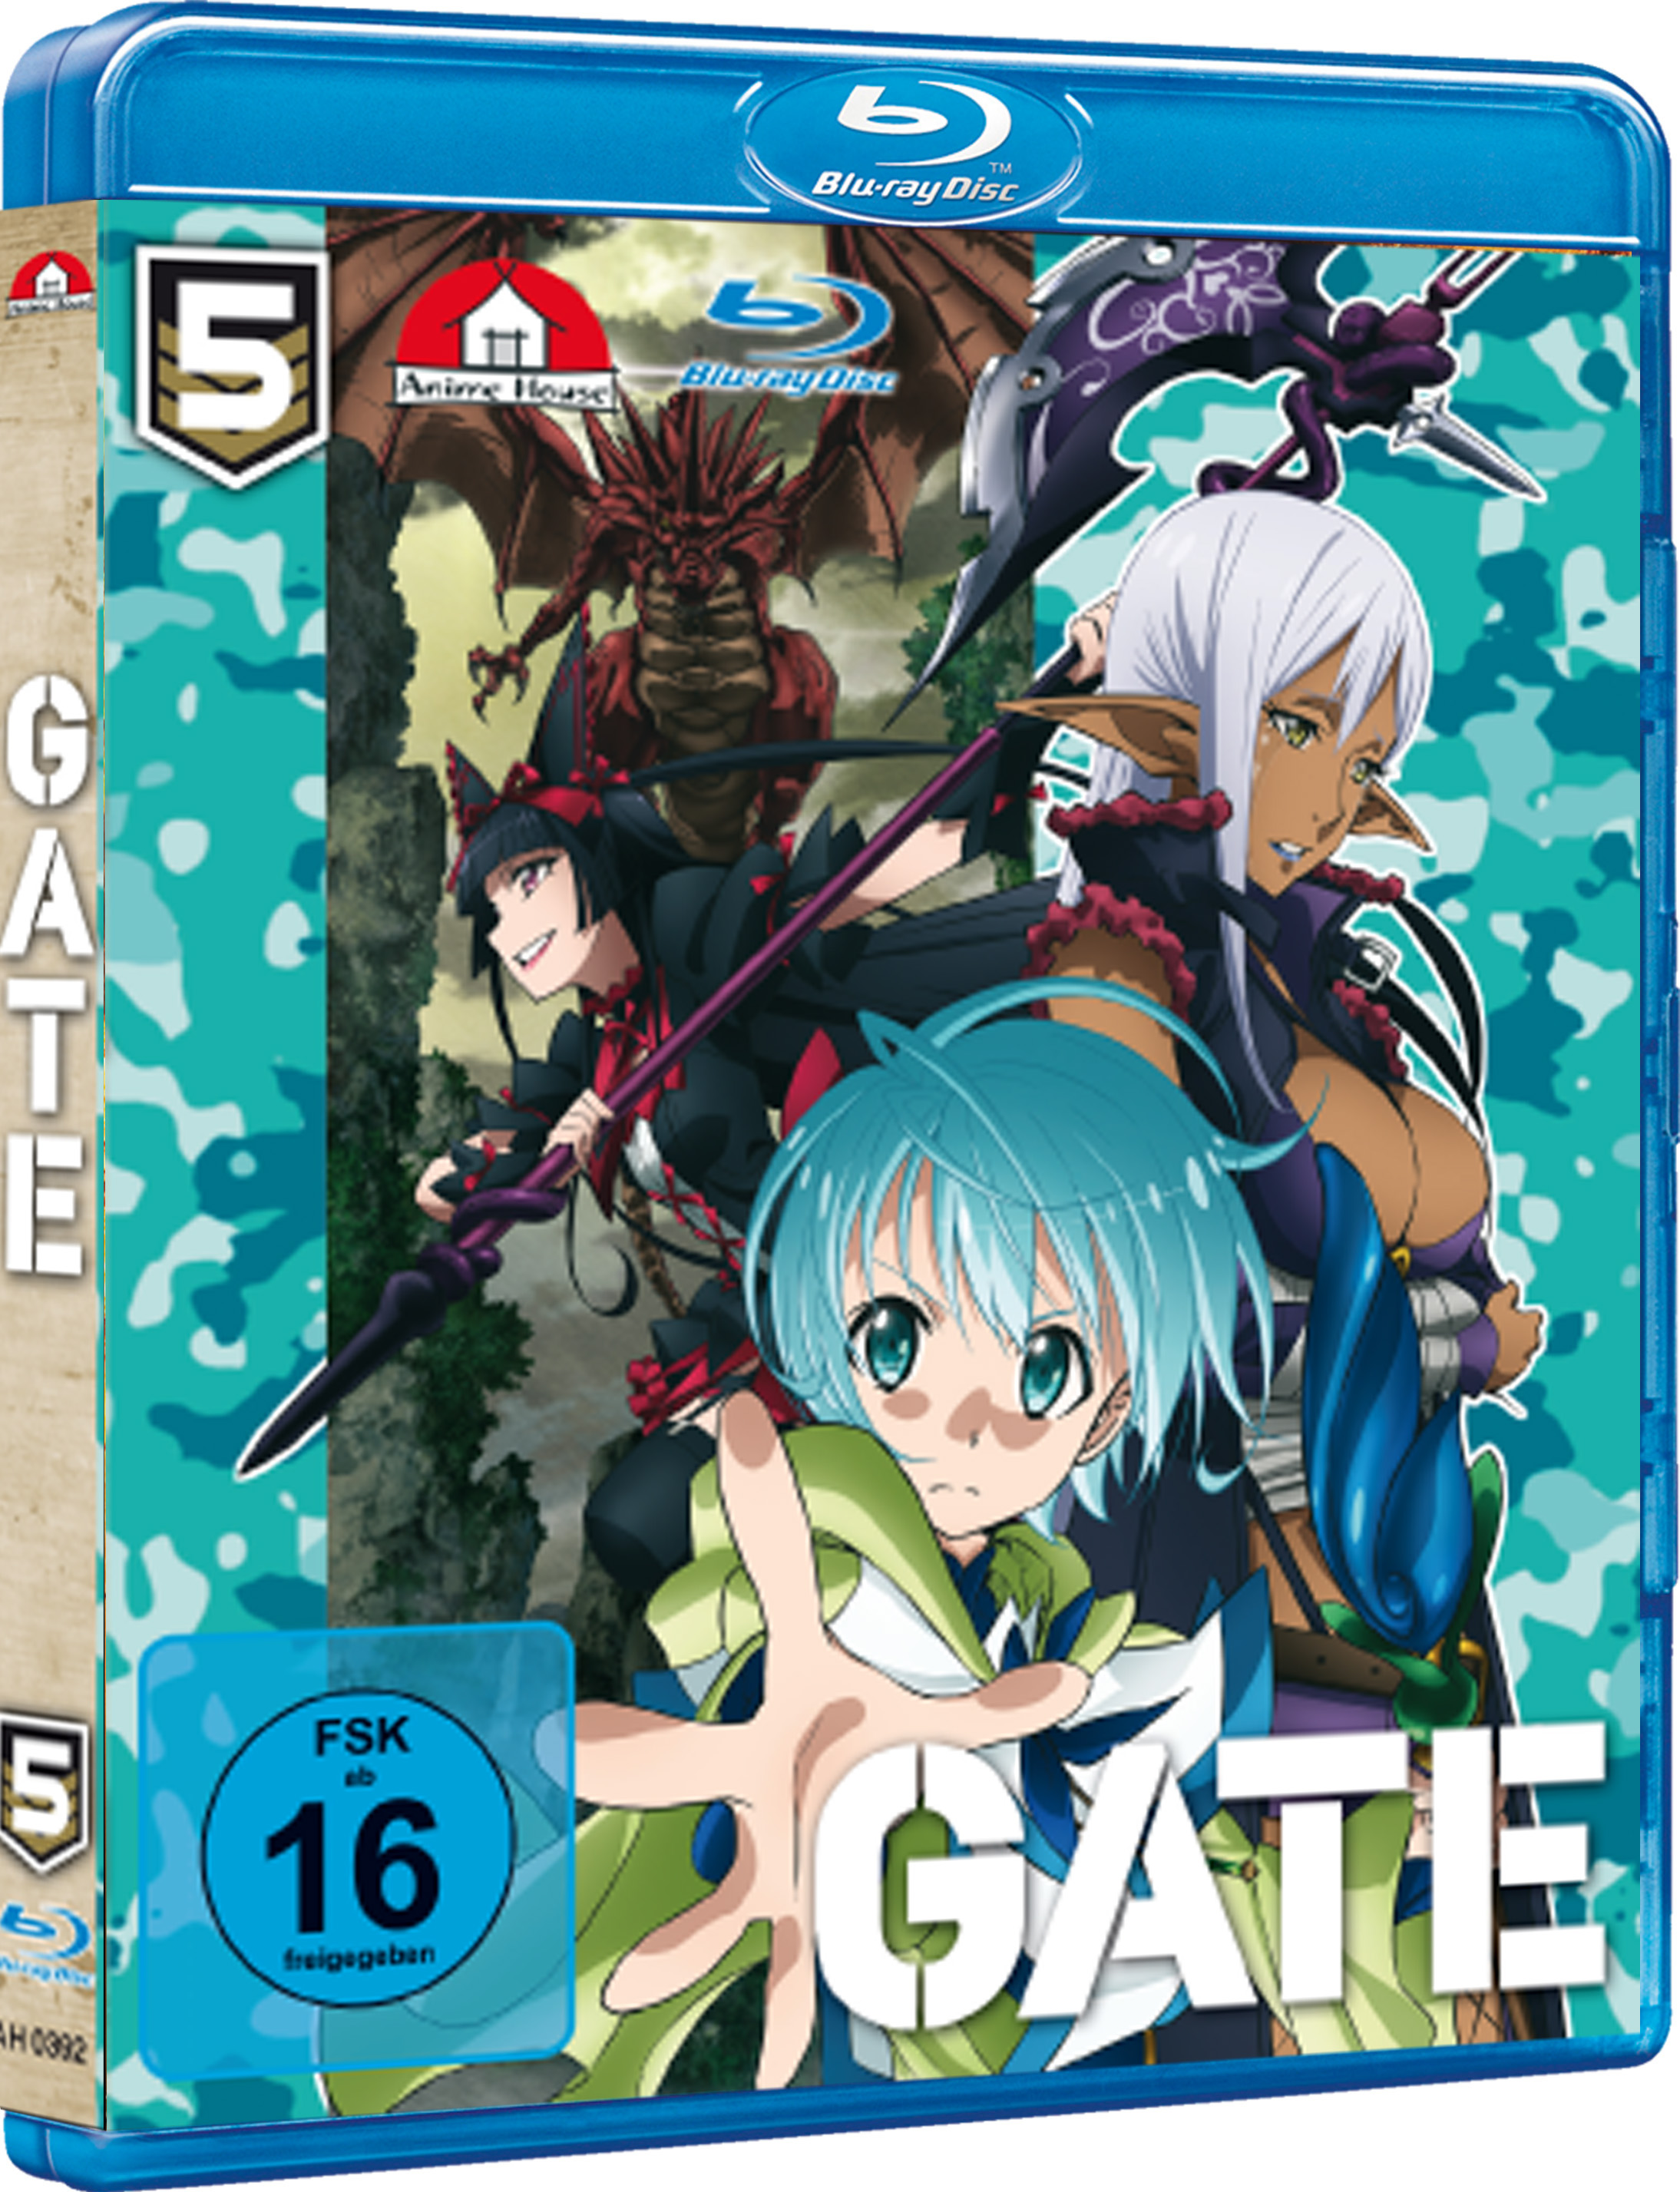 Anime im Test: GATE Vol. 5